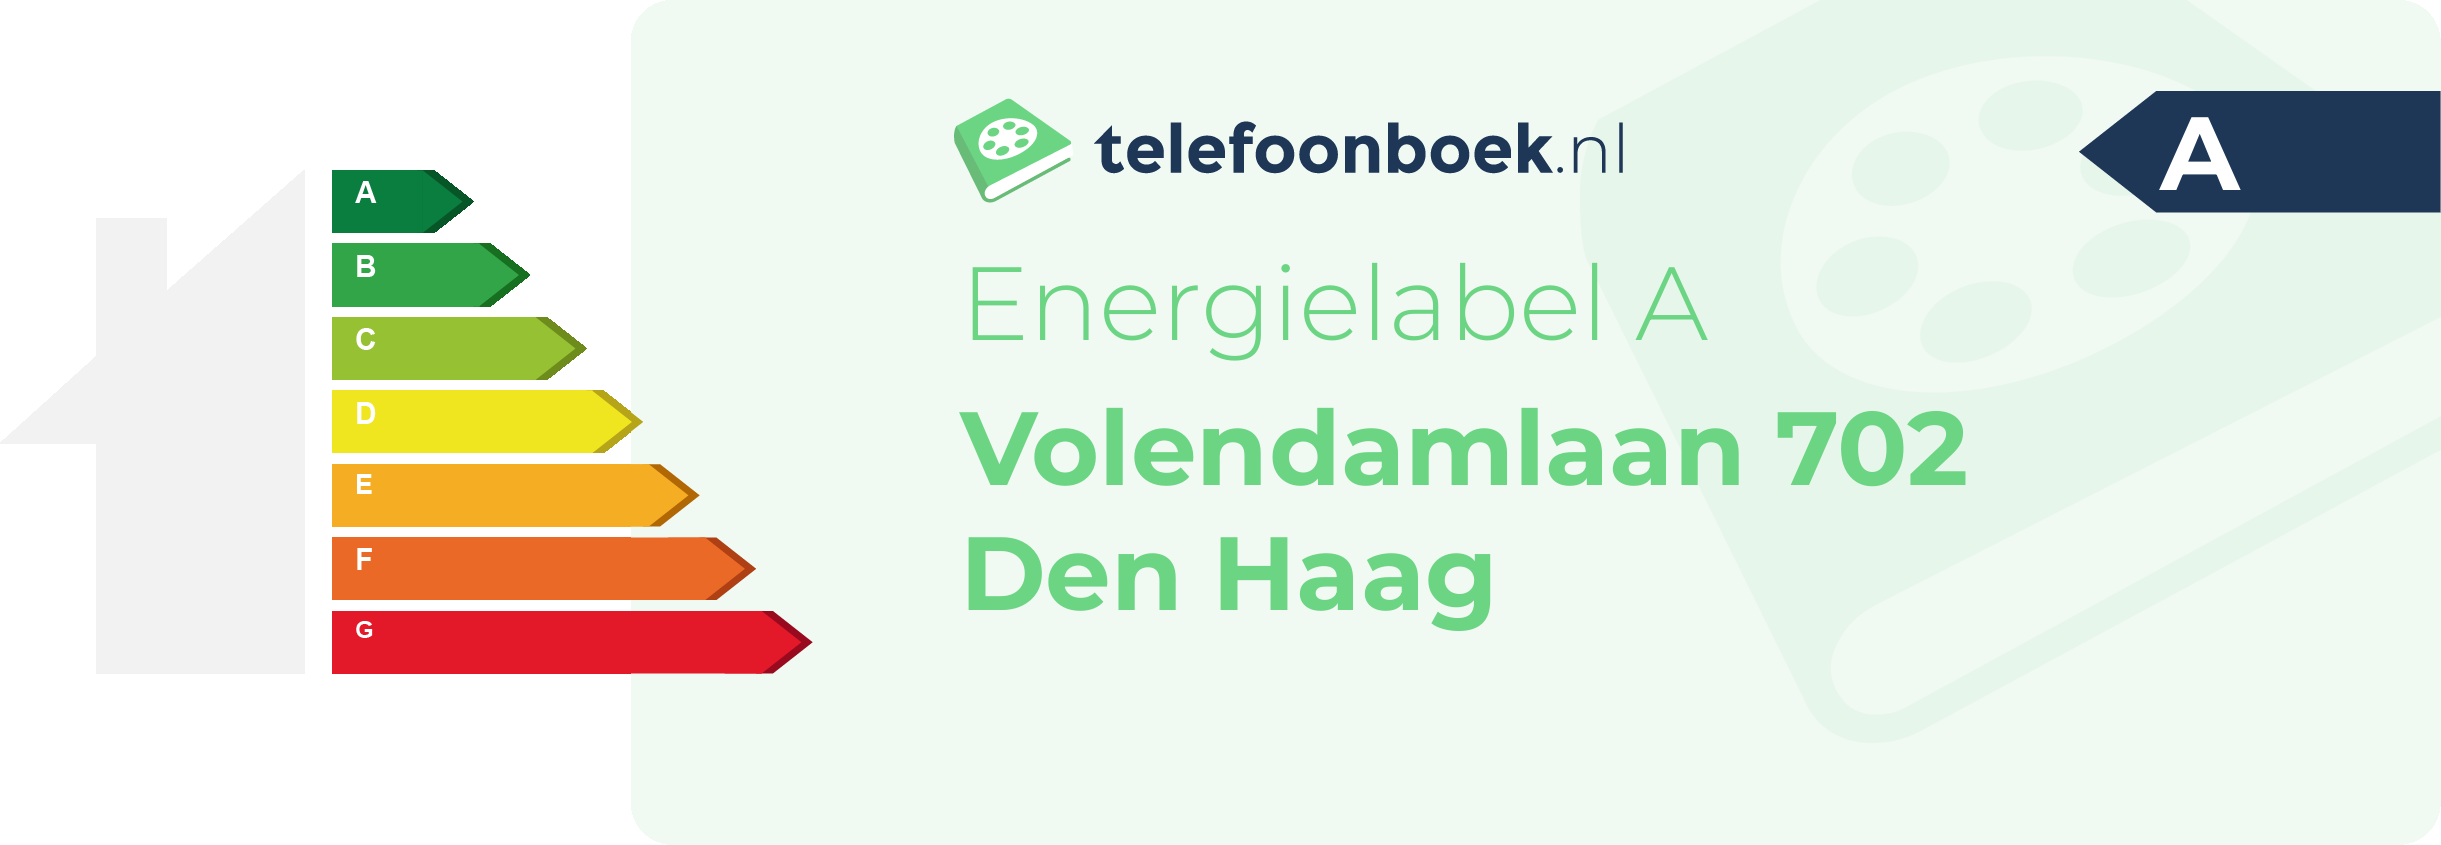 Energielabel Volendamlaan 702 Den Haag